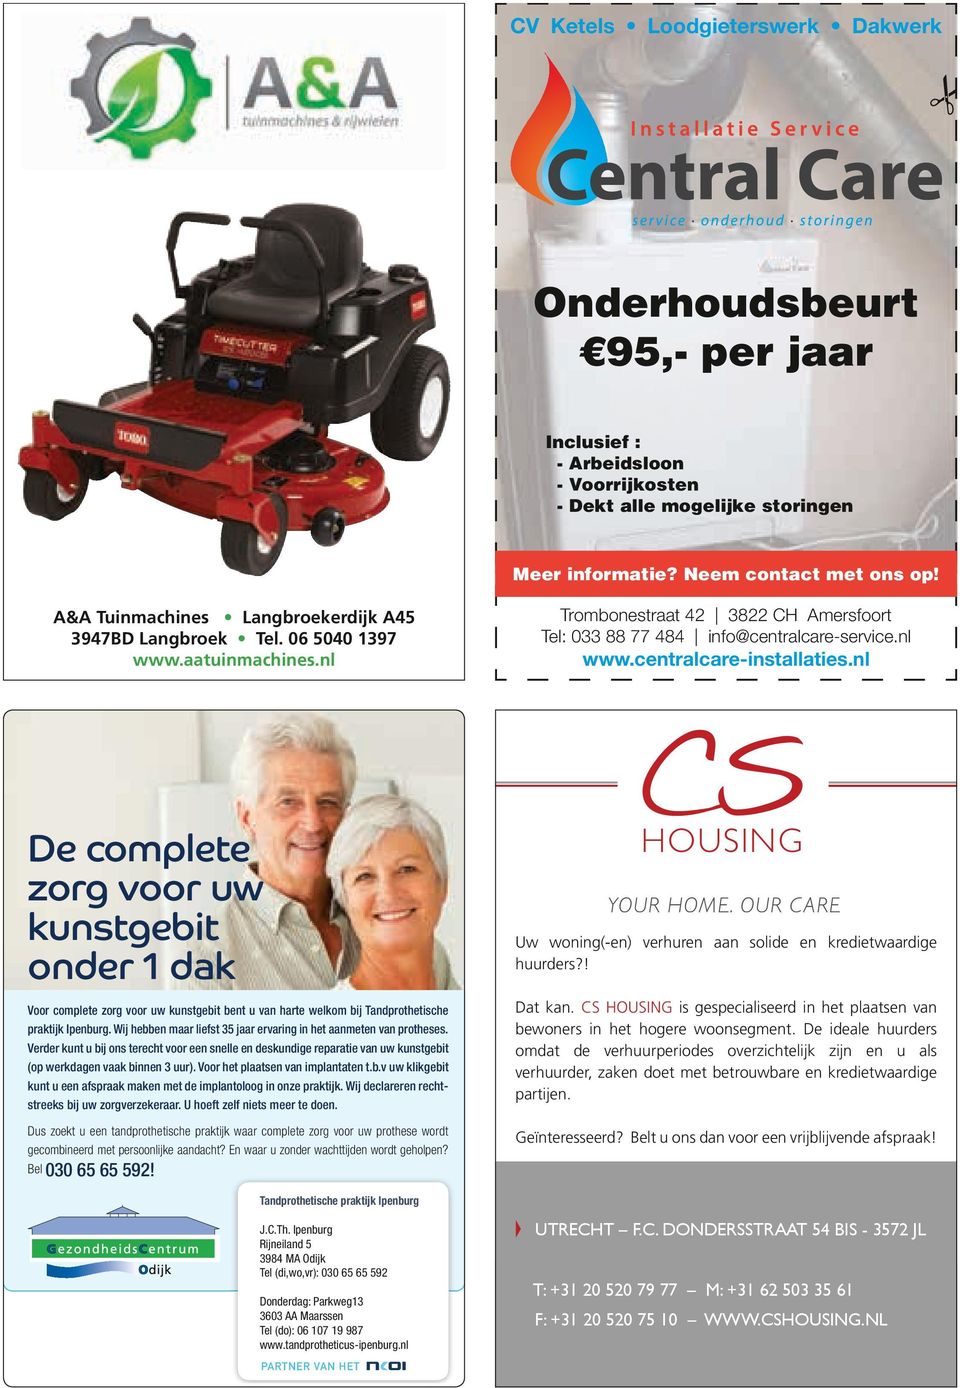 centralcare-installaties.nl 132989.pdf 1 12-9-2014 0132903.pdf 16:29:151 12-9-2014 16:27:07 WIJ NEMEN DE TIJD OM DE PERFECTE MATCH TE ZOEKEN.